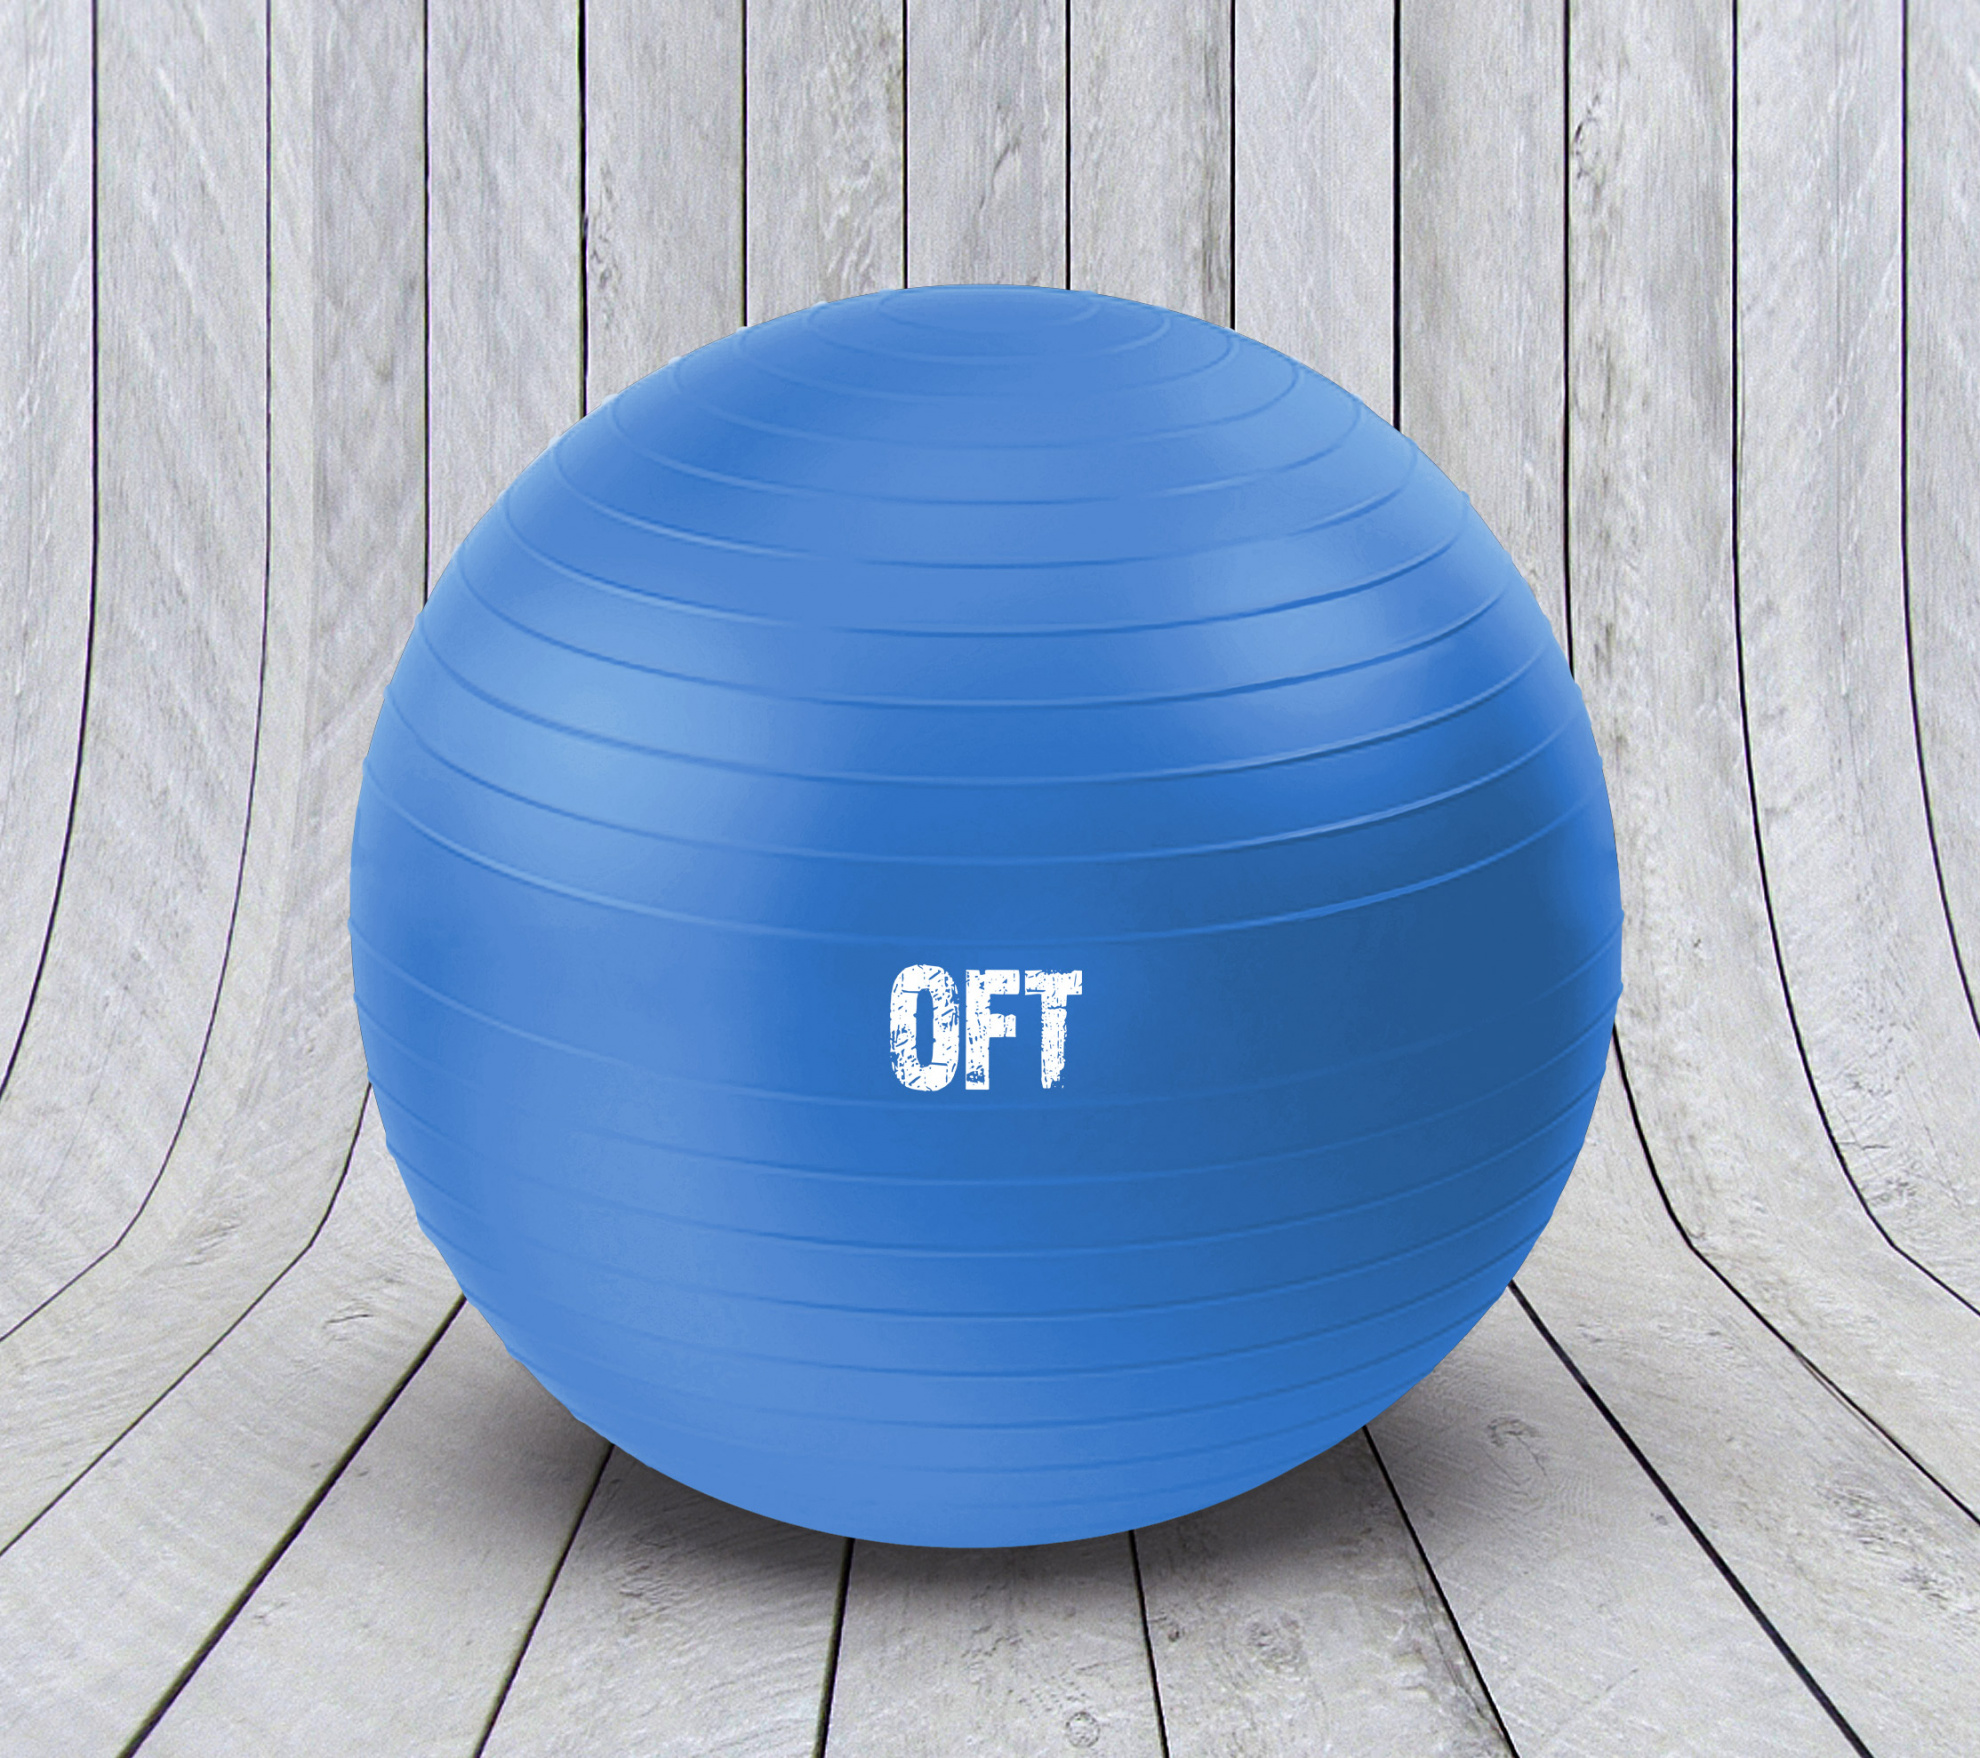 Гимнастический мяч Original FitTools 75 см синий с насосом FT-GBR-75BS